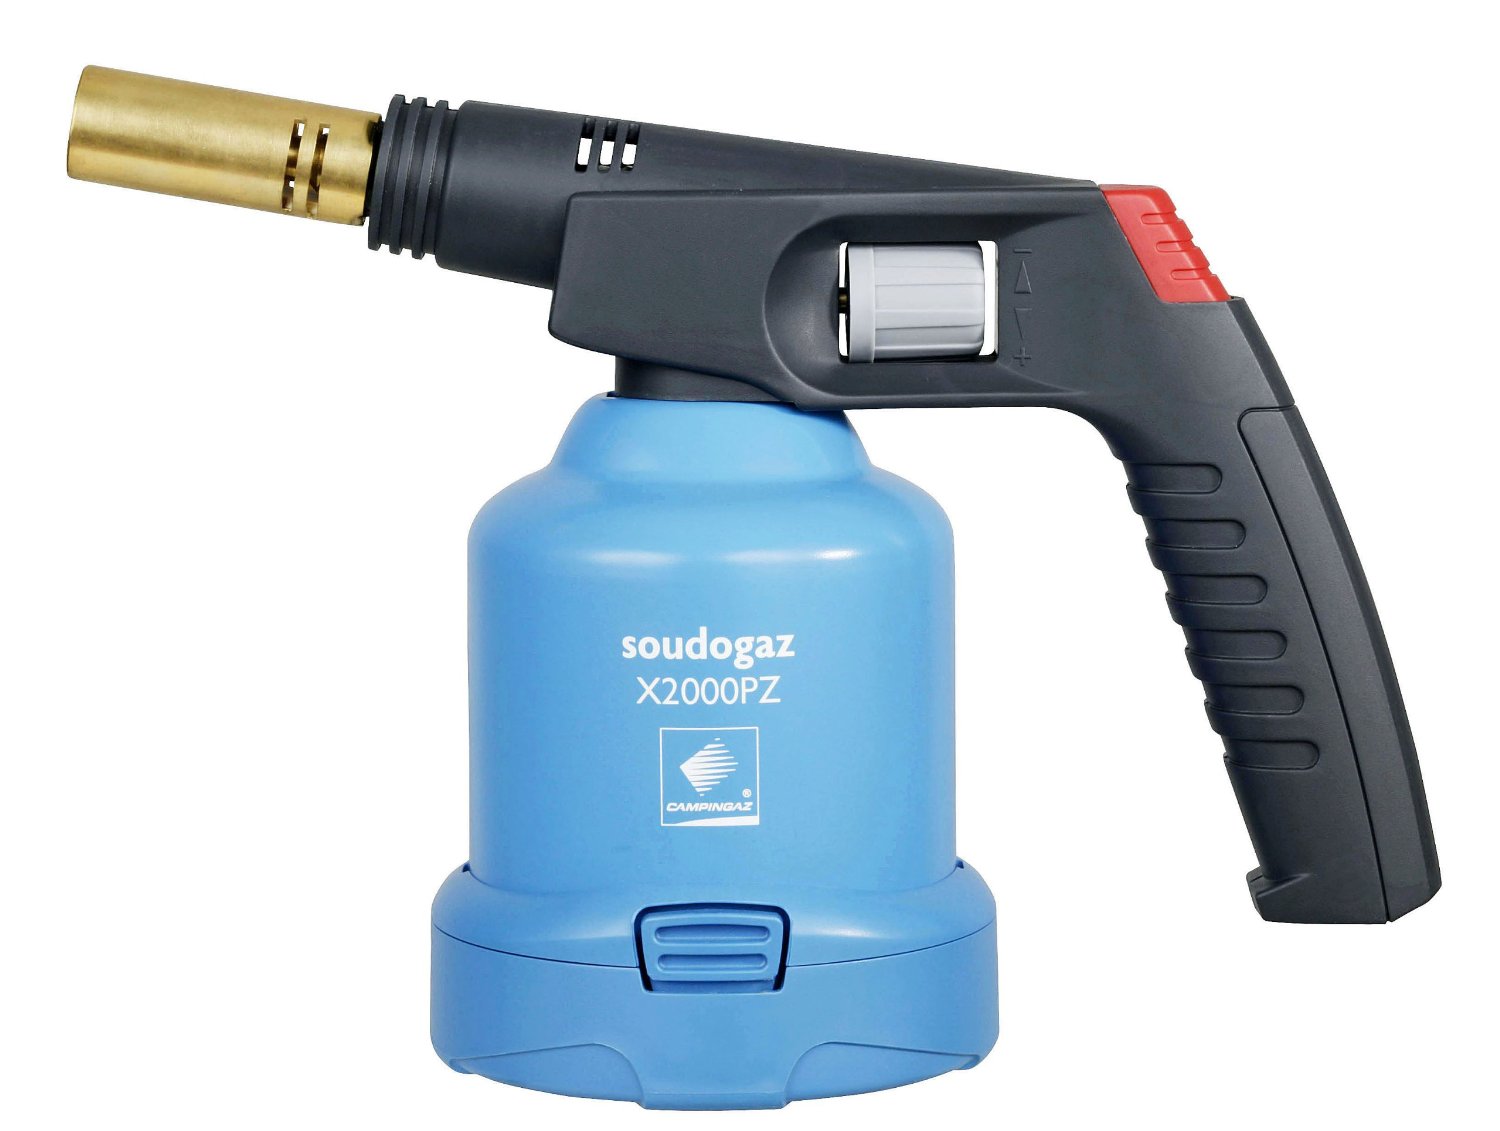 CAMPINGAZ Soudogaz® X 2000PZ Pierceable Cartridge Blowlamps